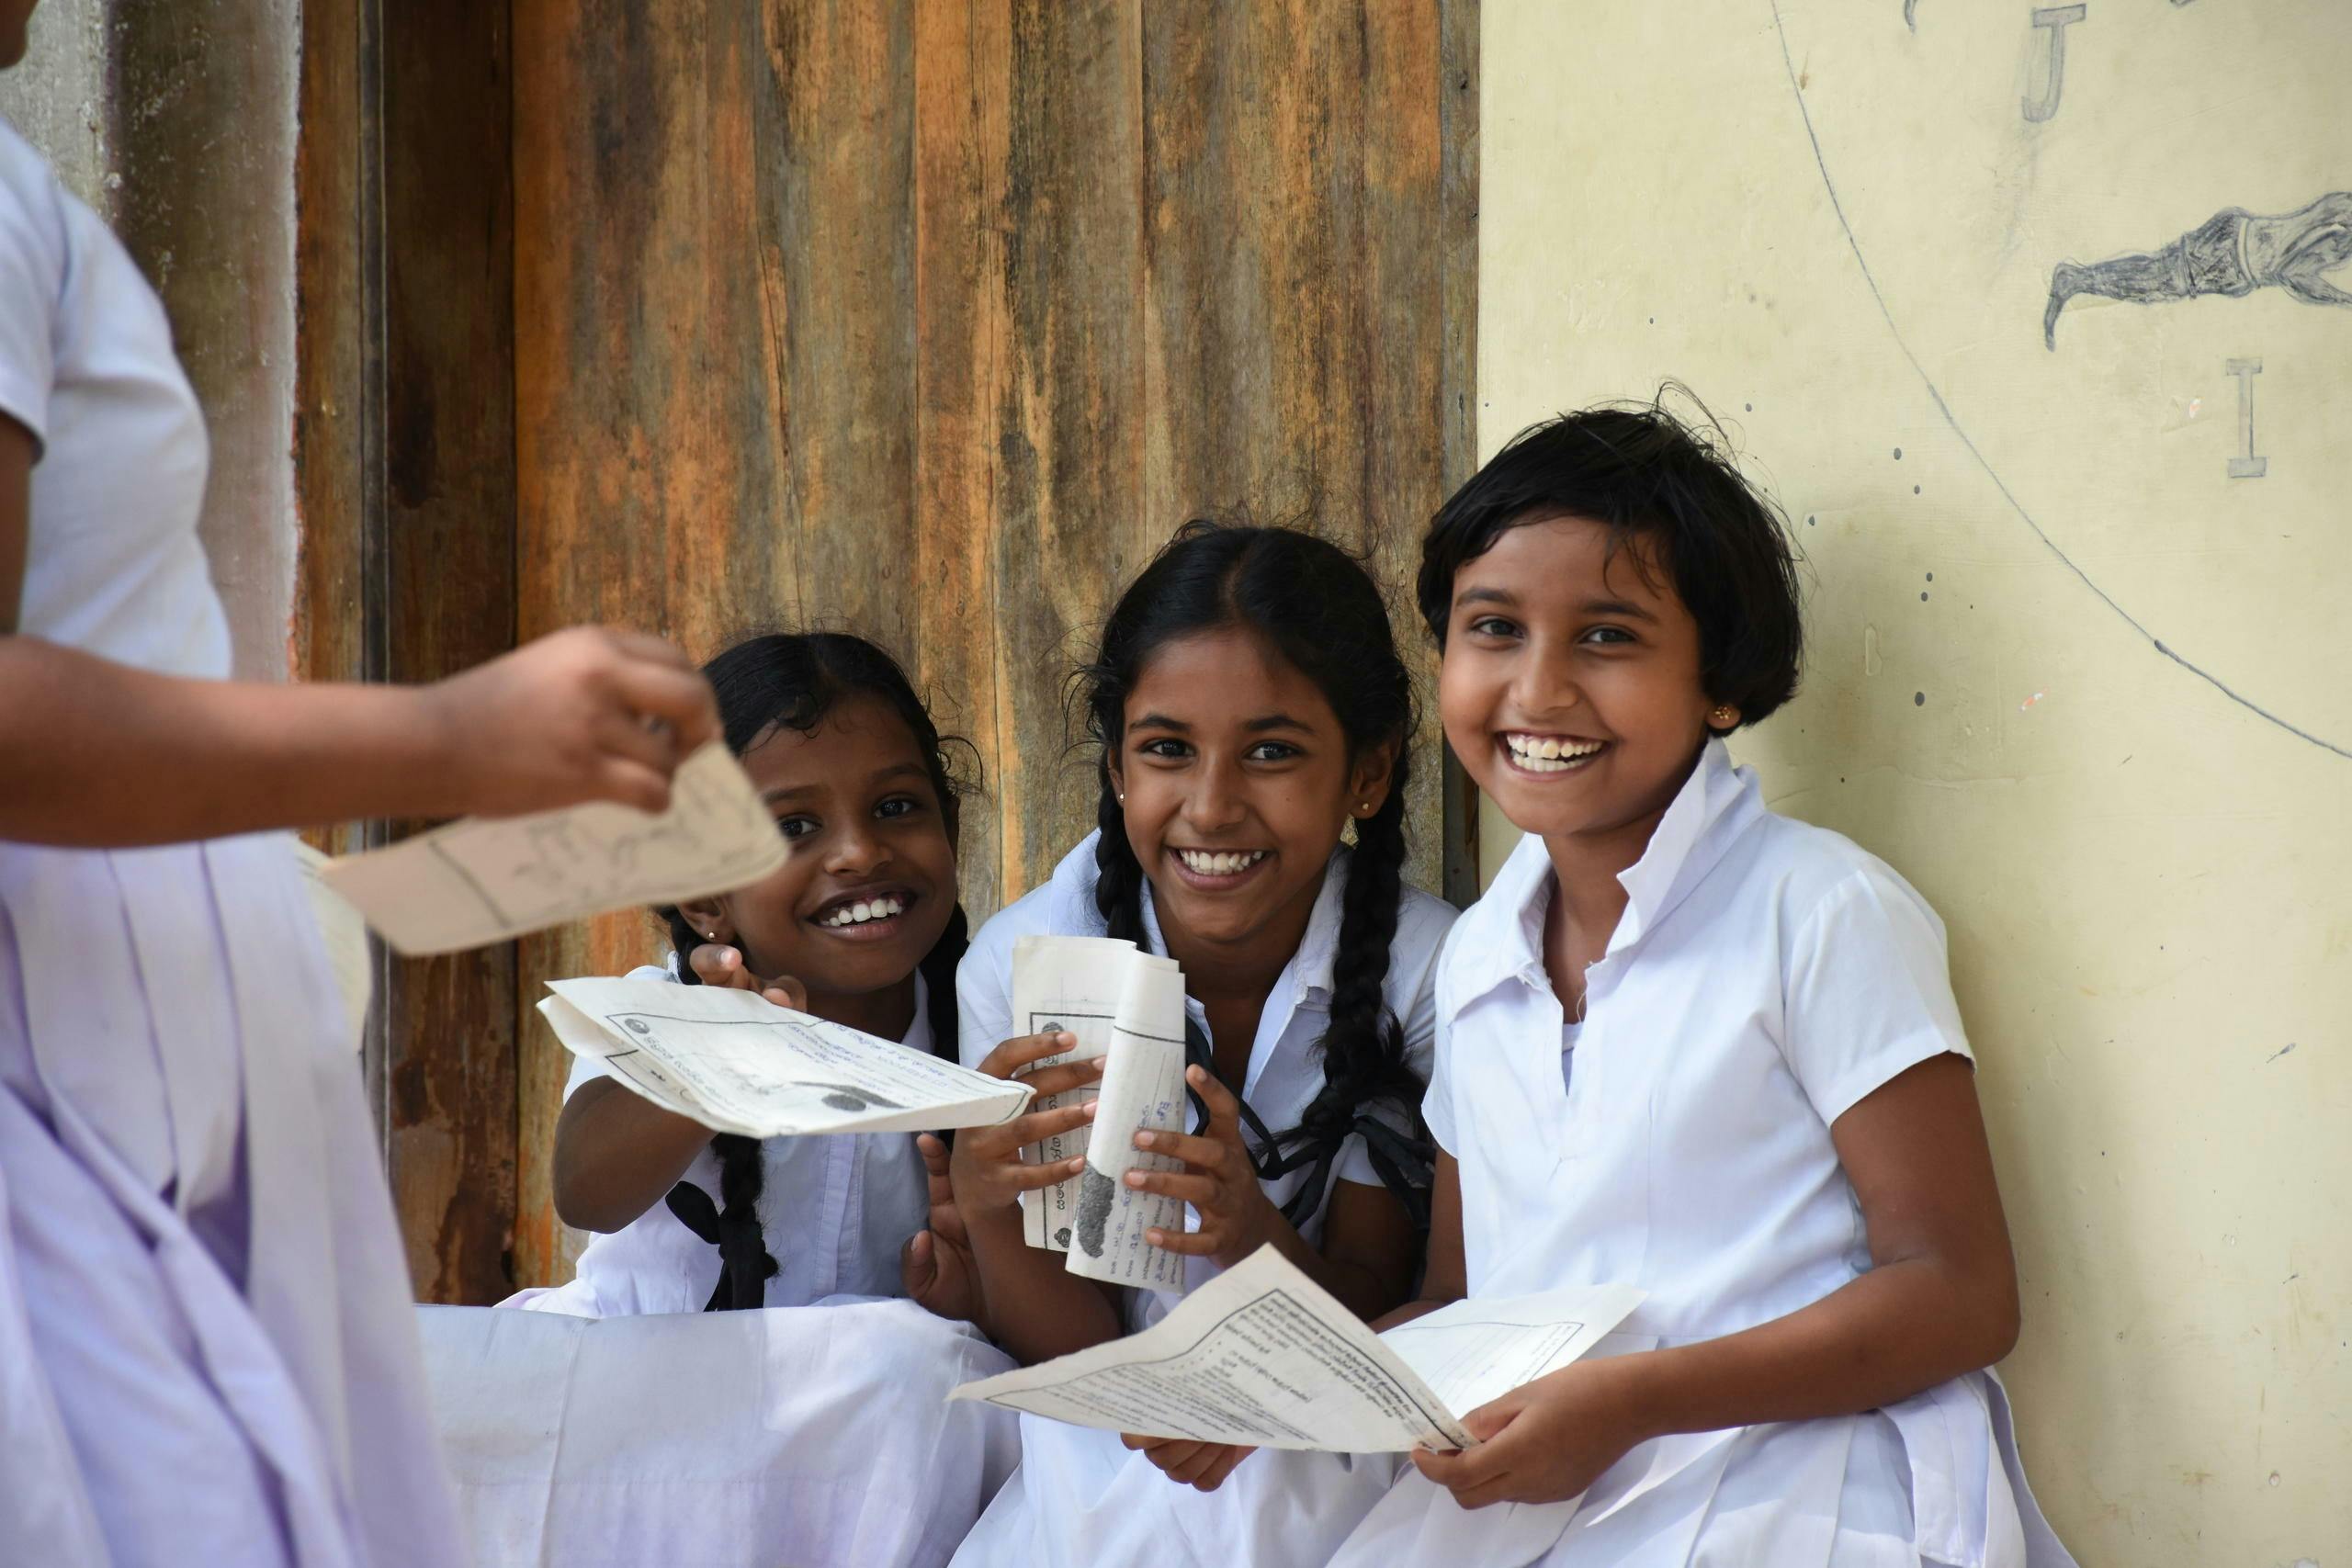 Drei lachende Mädchen in ihrer typischen weissen Schuluniform lachen in die Kamera. Sie halten Papier in den Händen und sitzen im Freien an einer Wand.